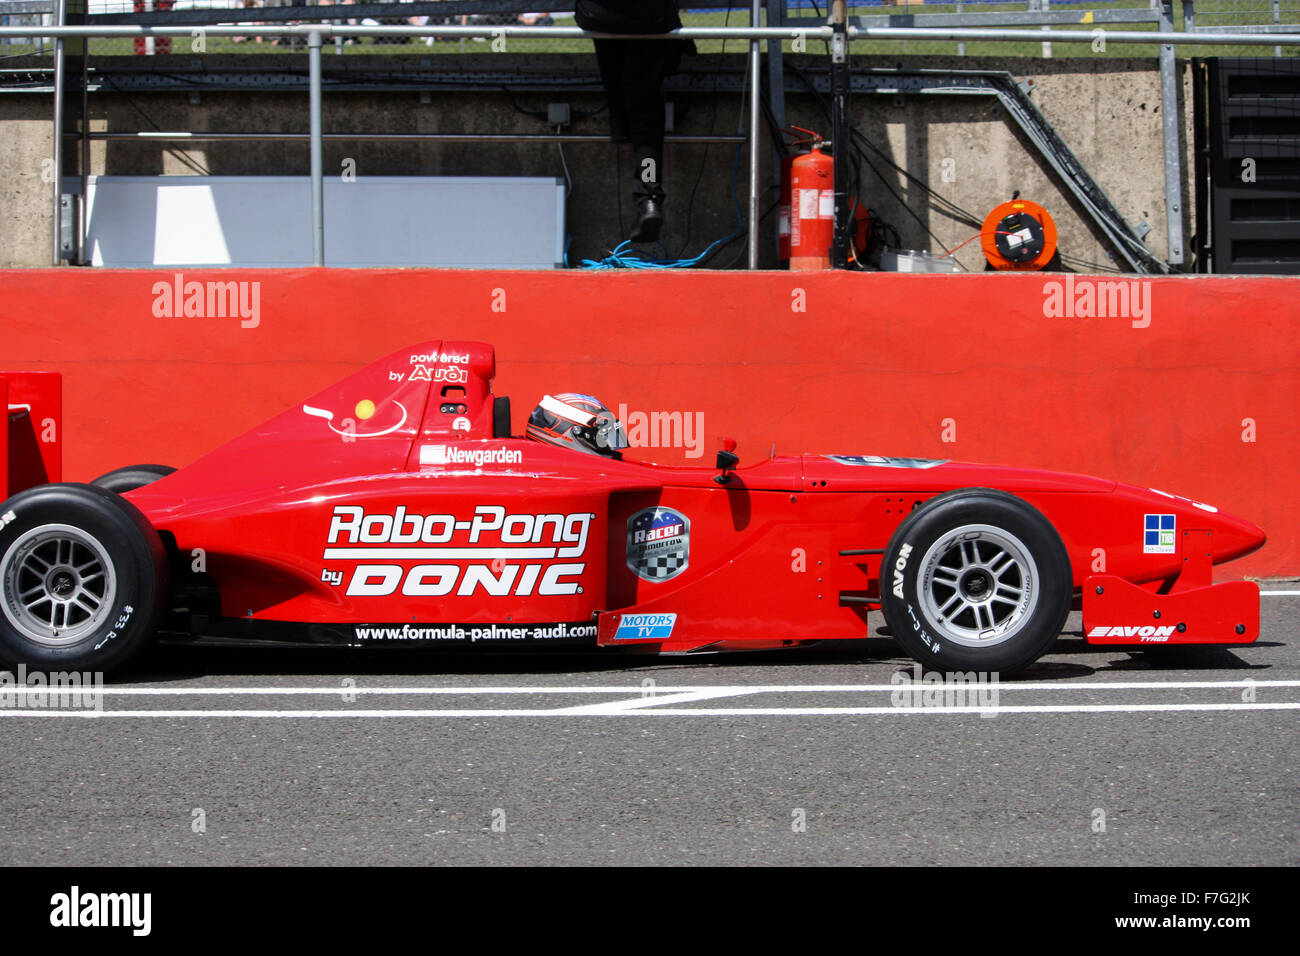 Red racing car contro uno sfondo rosso Foto Stock